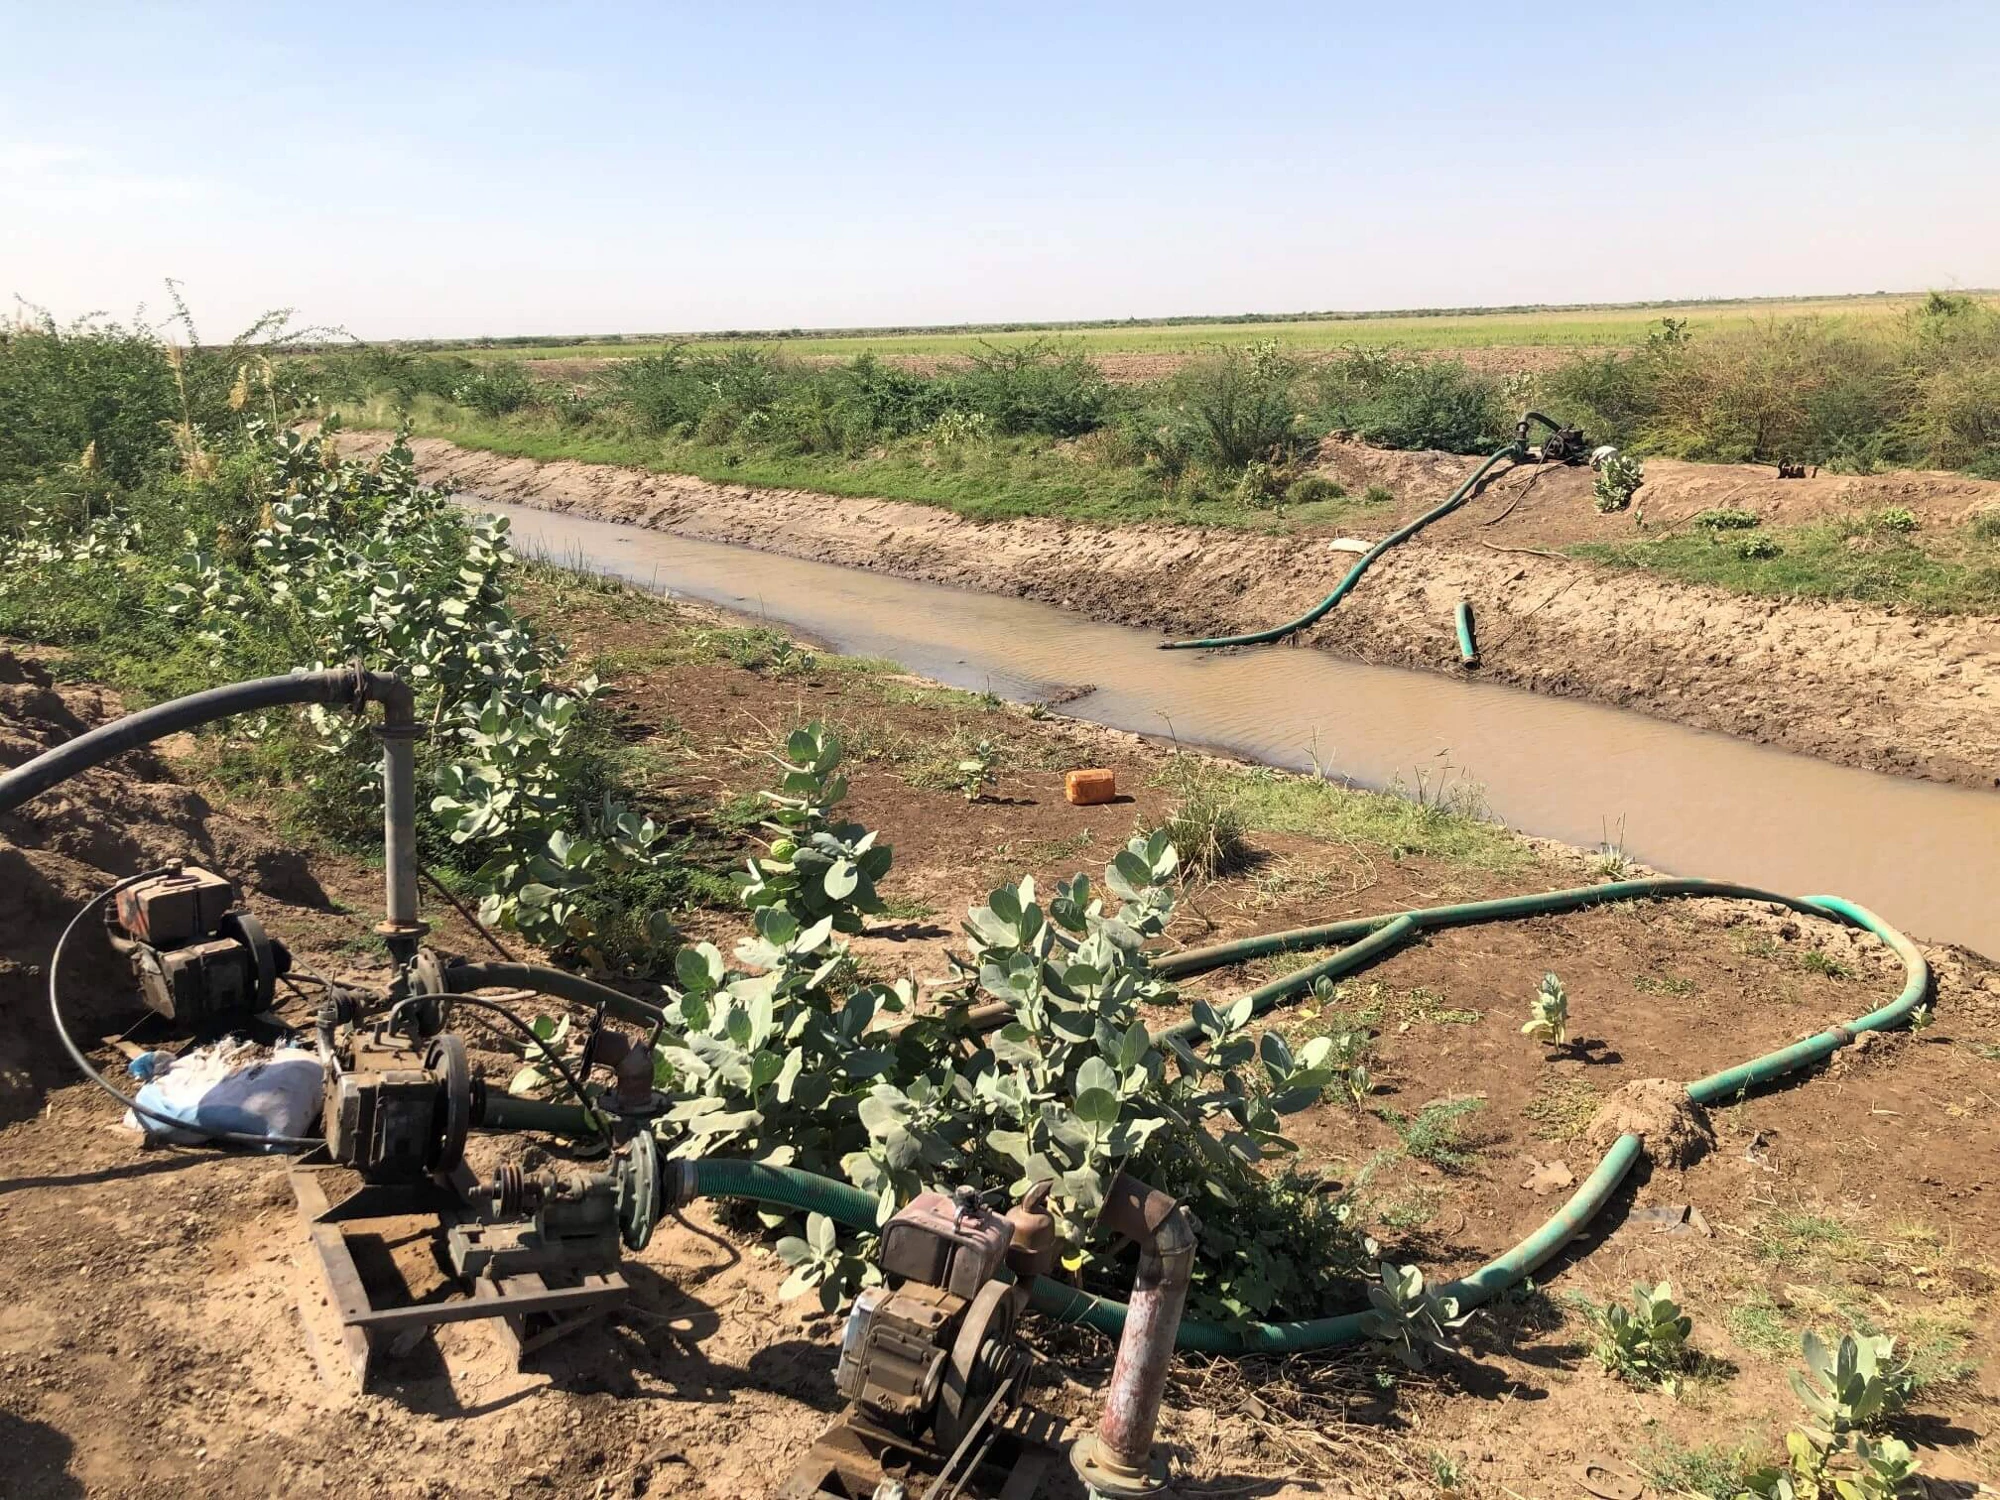 Il est crucial que les agriculteurs obtiennent de l'eau pour leurs cultures. Ces pompes d'irrigation ont un rôle important dans l'approvisionnement en eau des champs des agriculteurs. Crédits photo : Yukio Tanaka